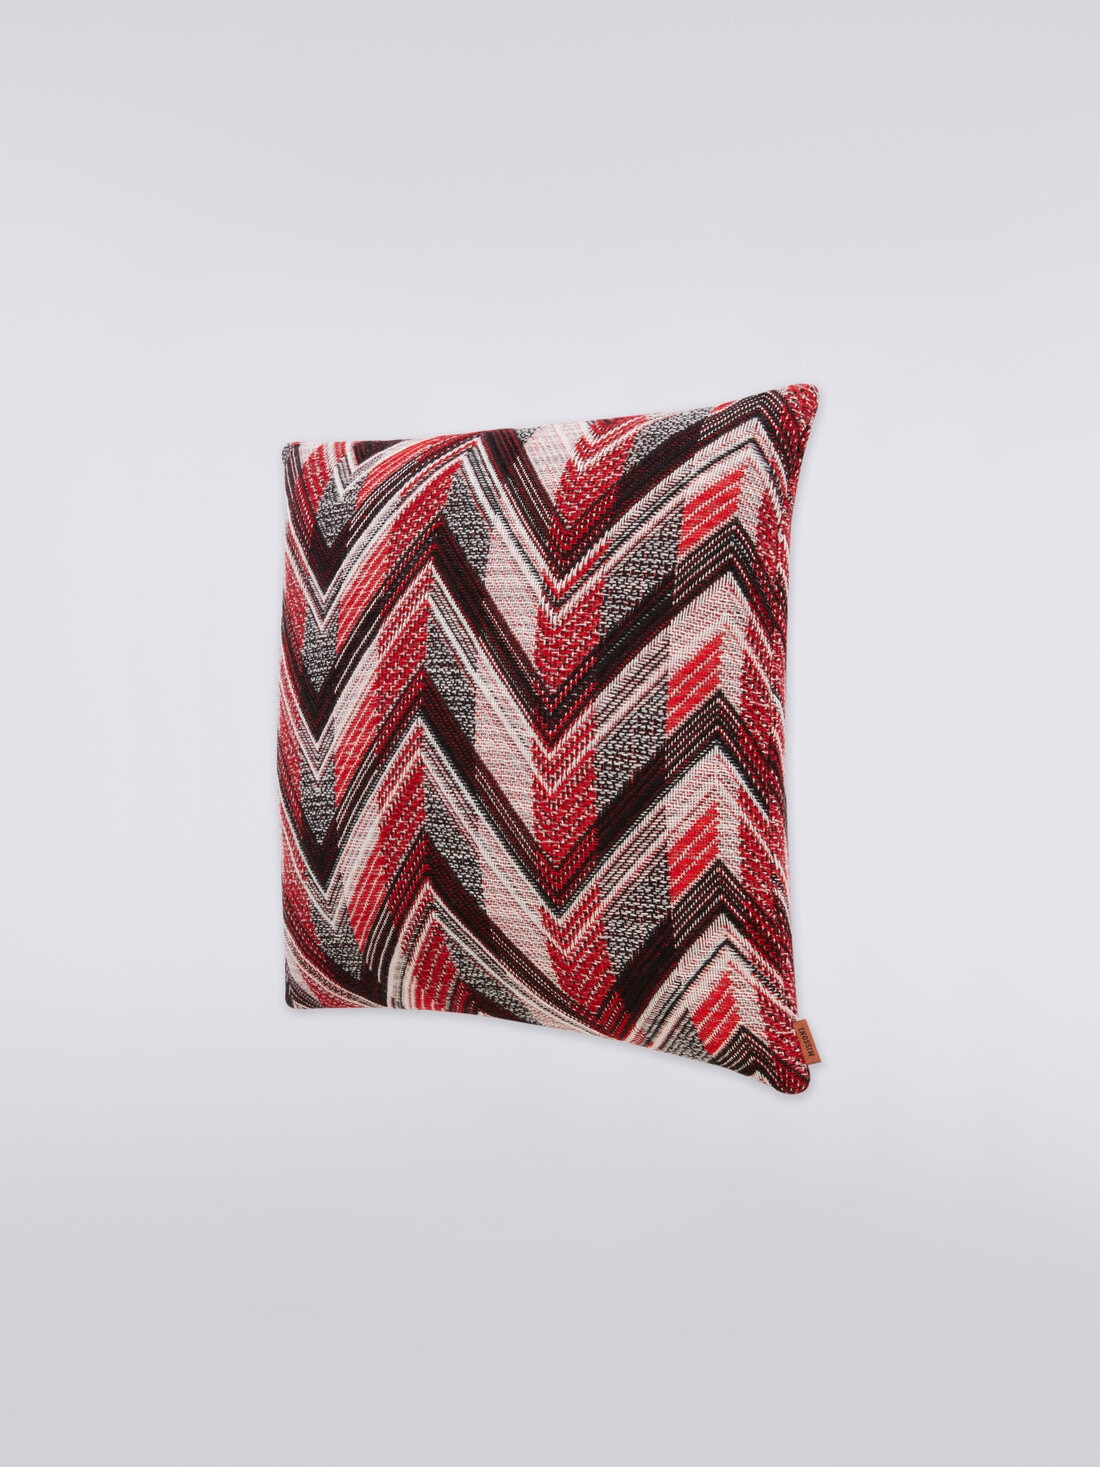 Basilio cushion 40x40 cm, Red  - 8051575780905 - 1